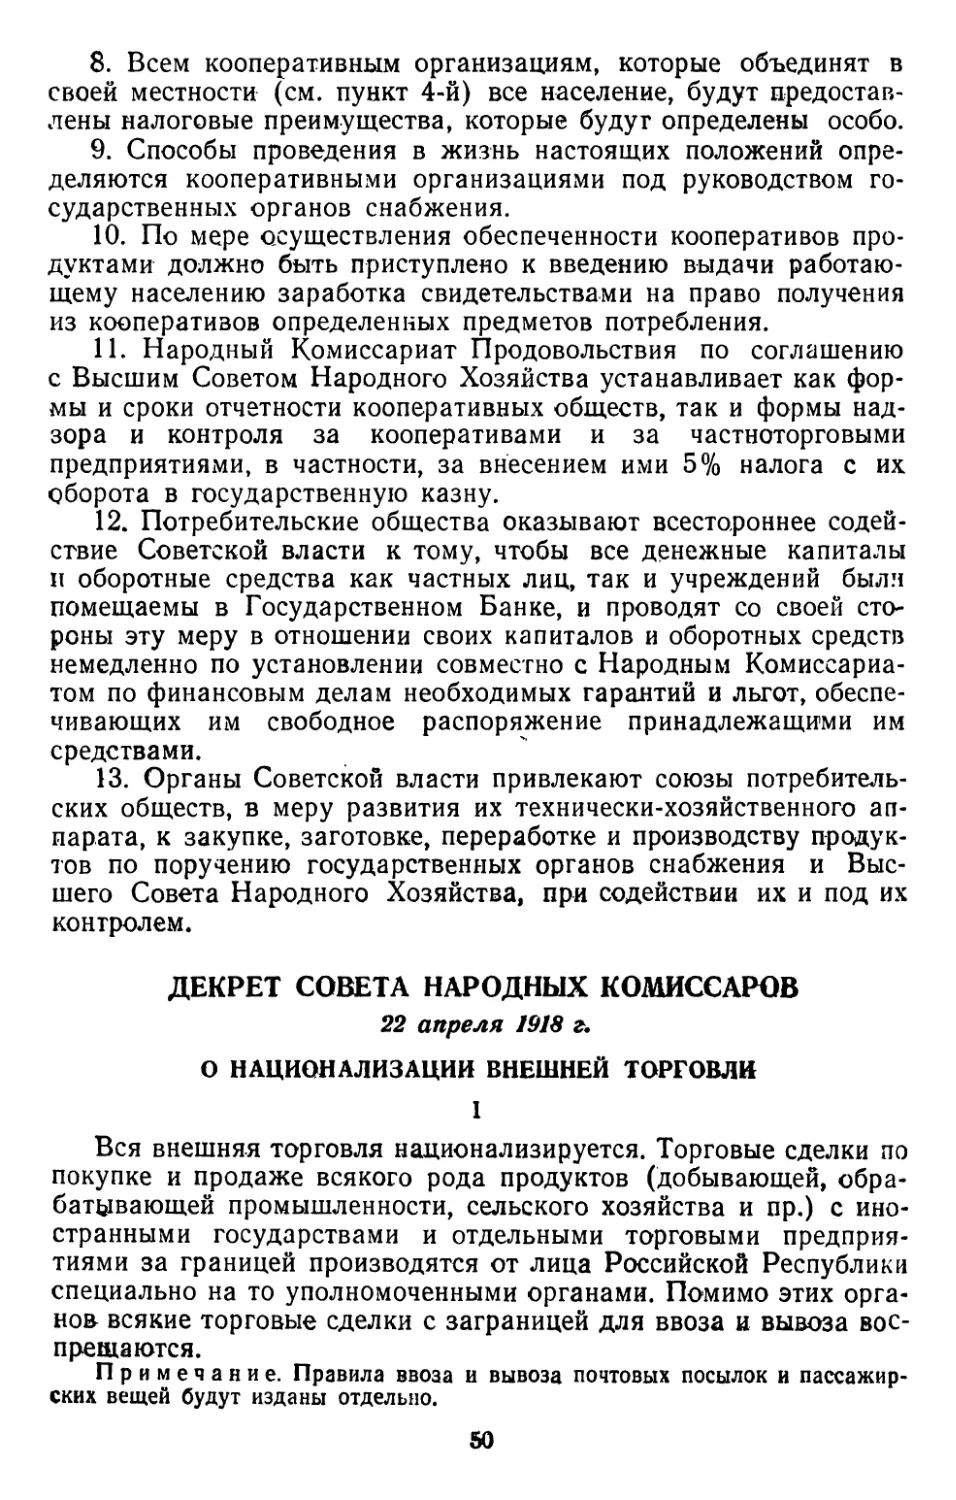 Декрет Совета Народных Комиссаров, 22 апреля 1918 г. О национализации внешней торговли